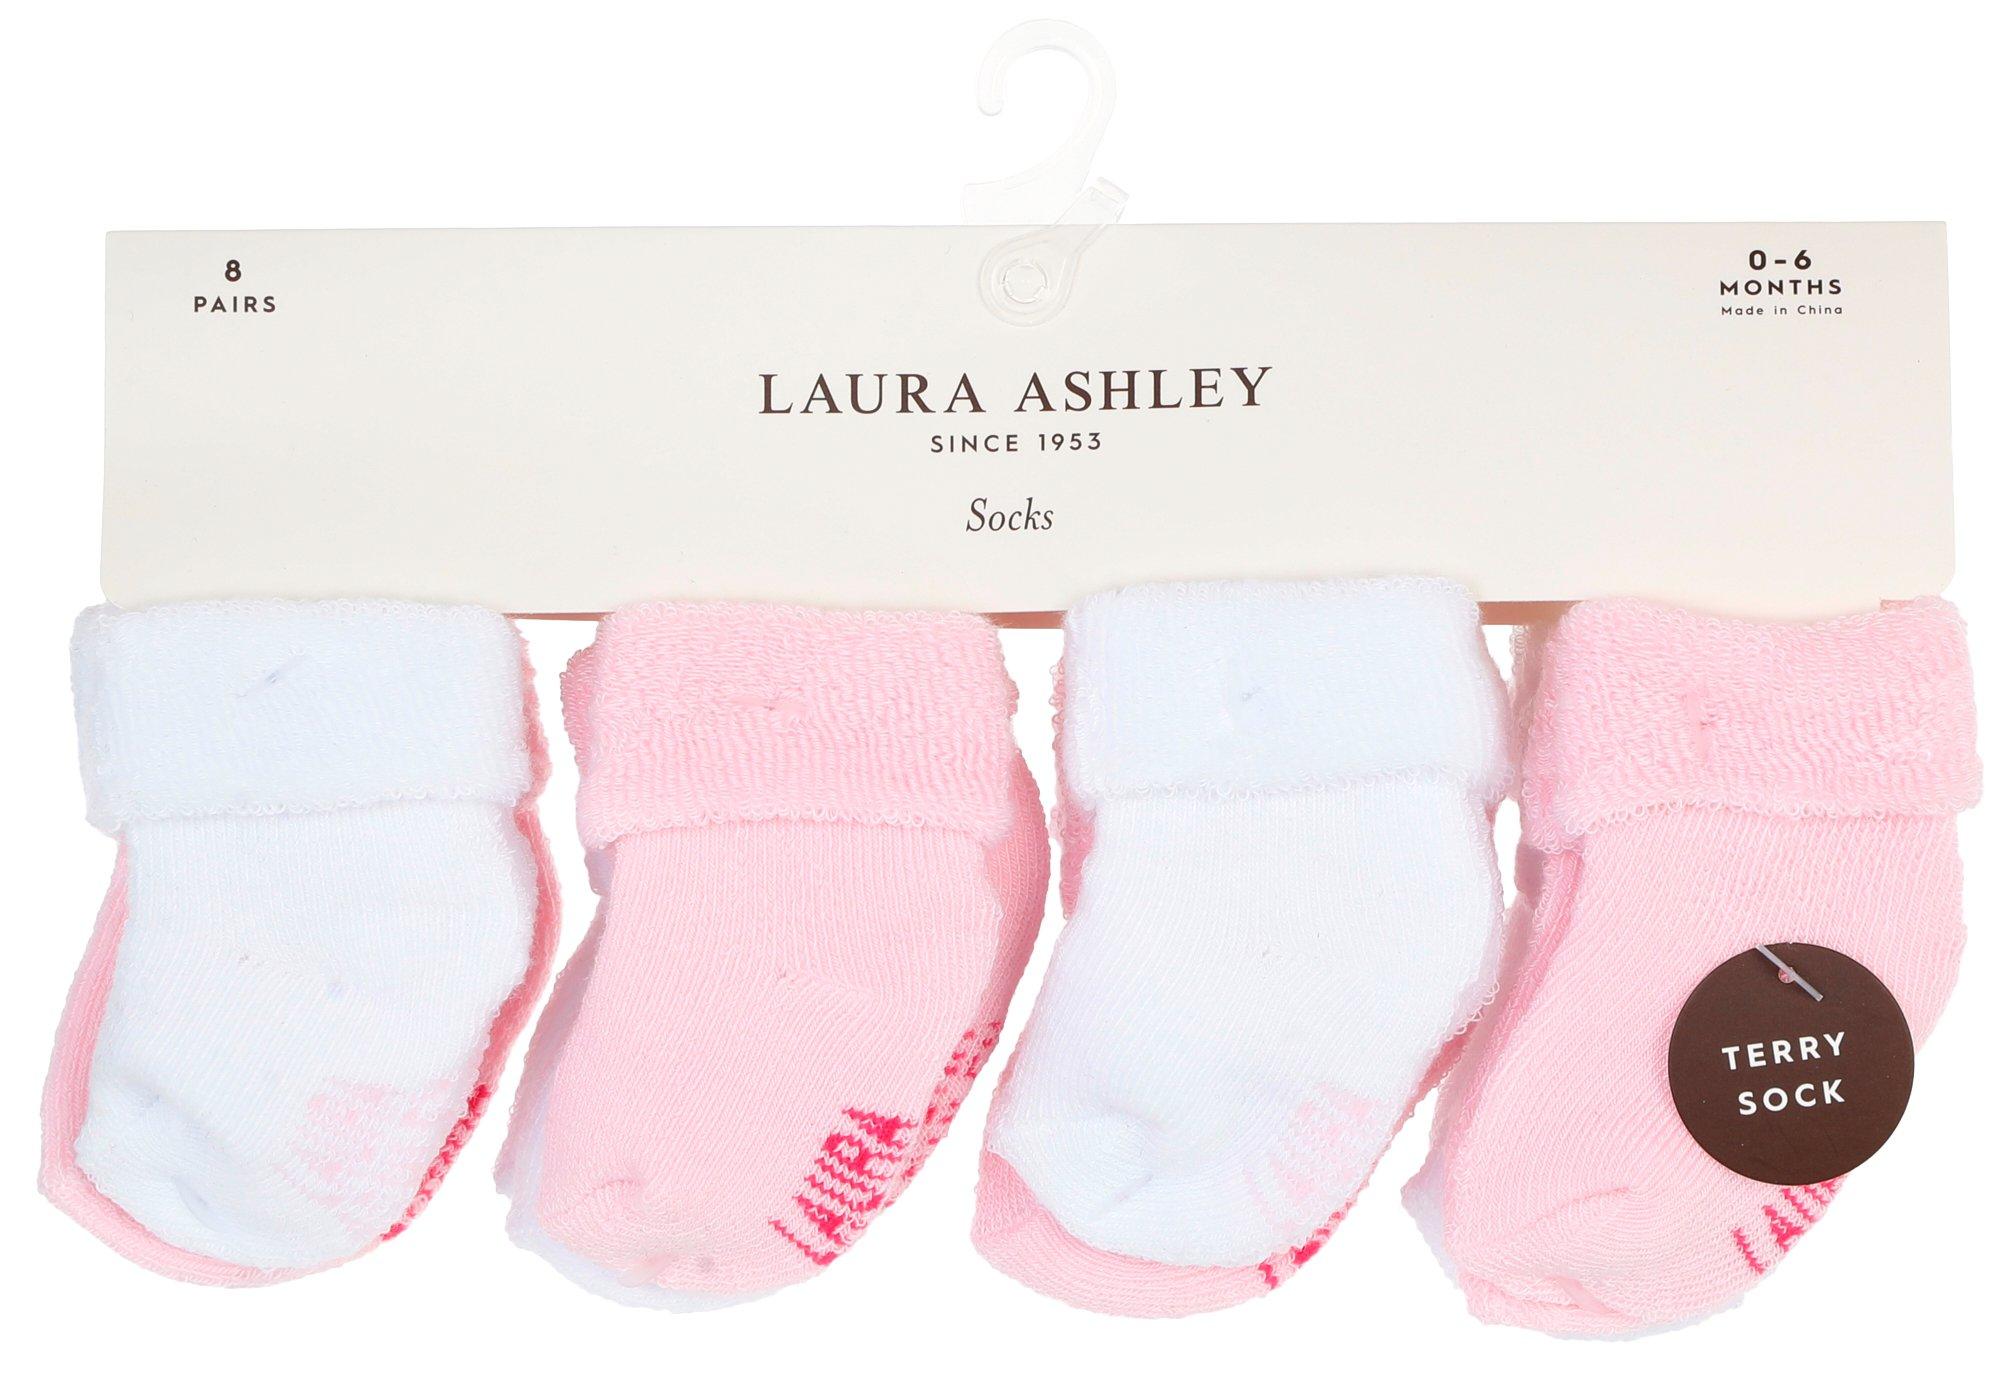 Baby Girls 8 Pk Socks